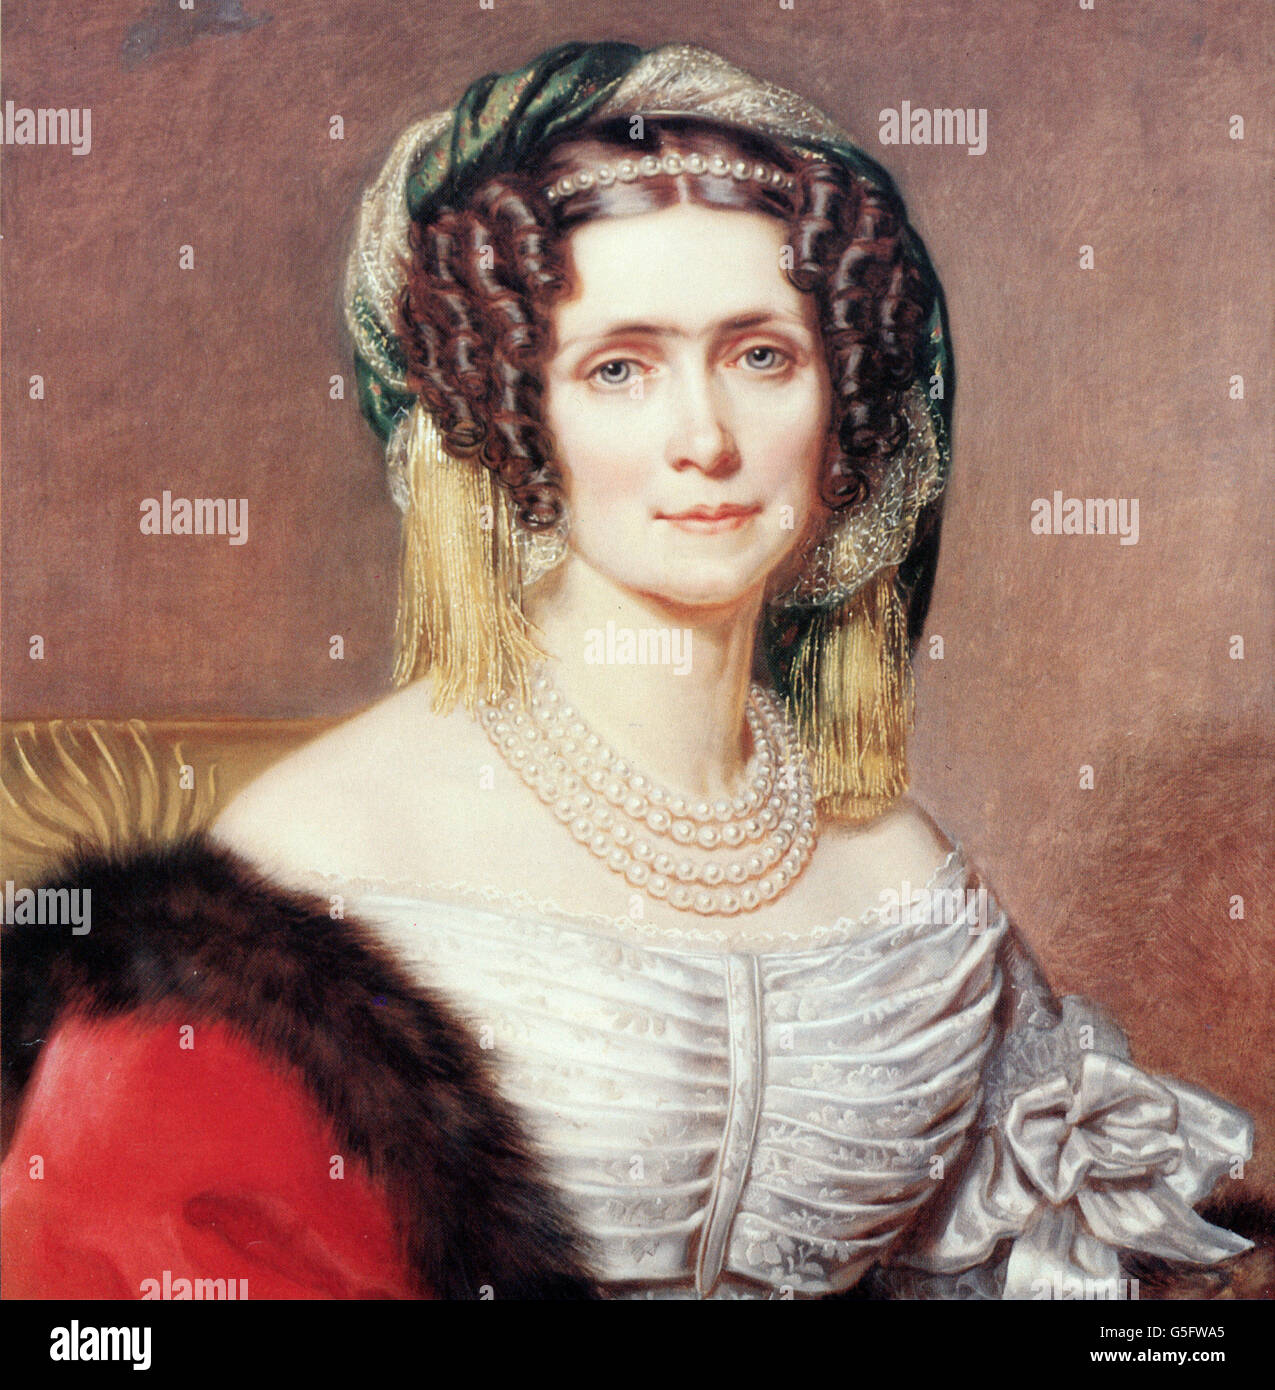 Caroline, 13.6.1776 - 13.11.1841, Königin von Bayern 1.1.1806 - 13.10.1825, Porträt, Drucken nach Gemälde von Joseph Stieler, circa 1820, Artist's Urheberrecht nicht geklärt zu werden. Stockfoto